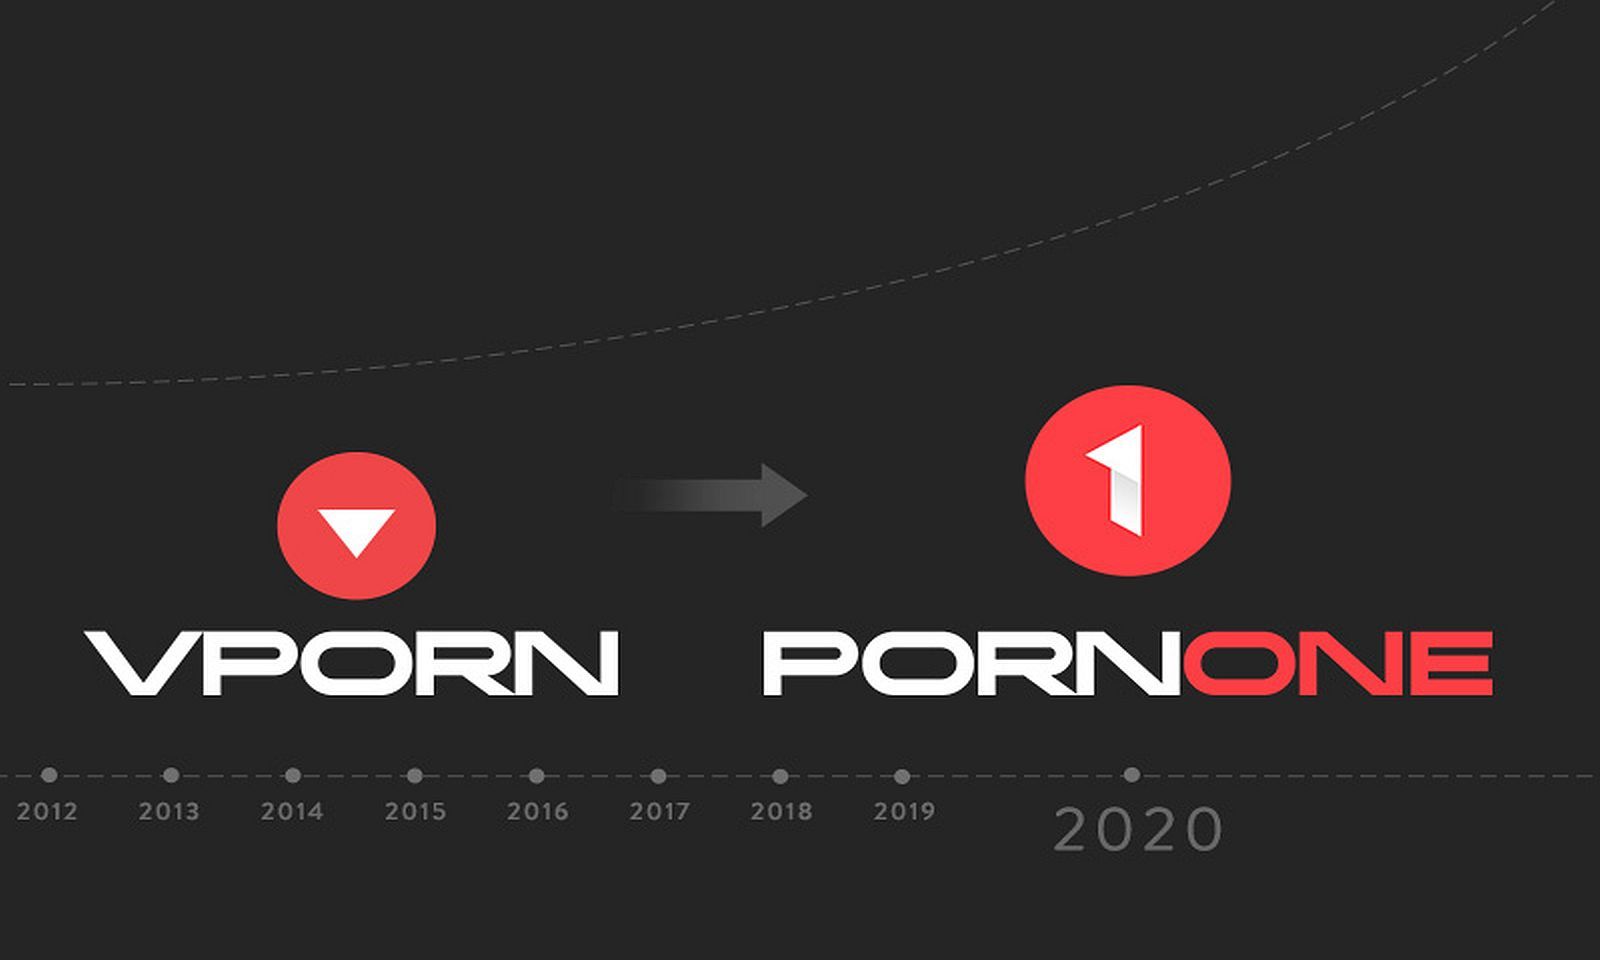 Pornone.